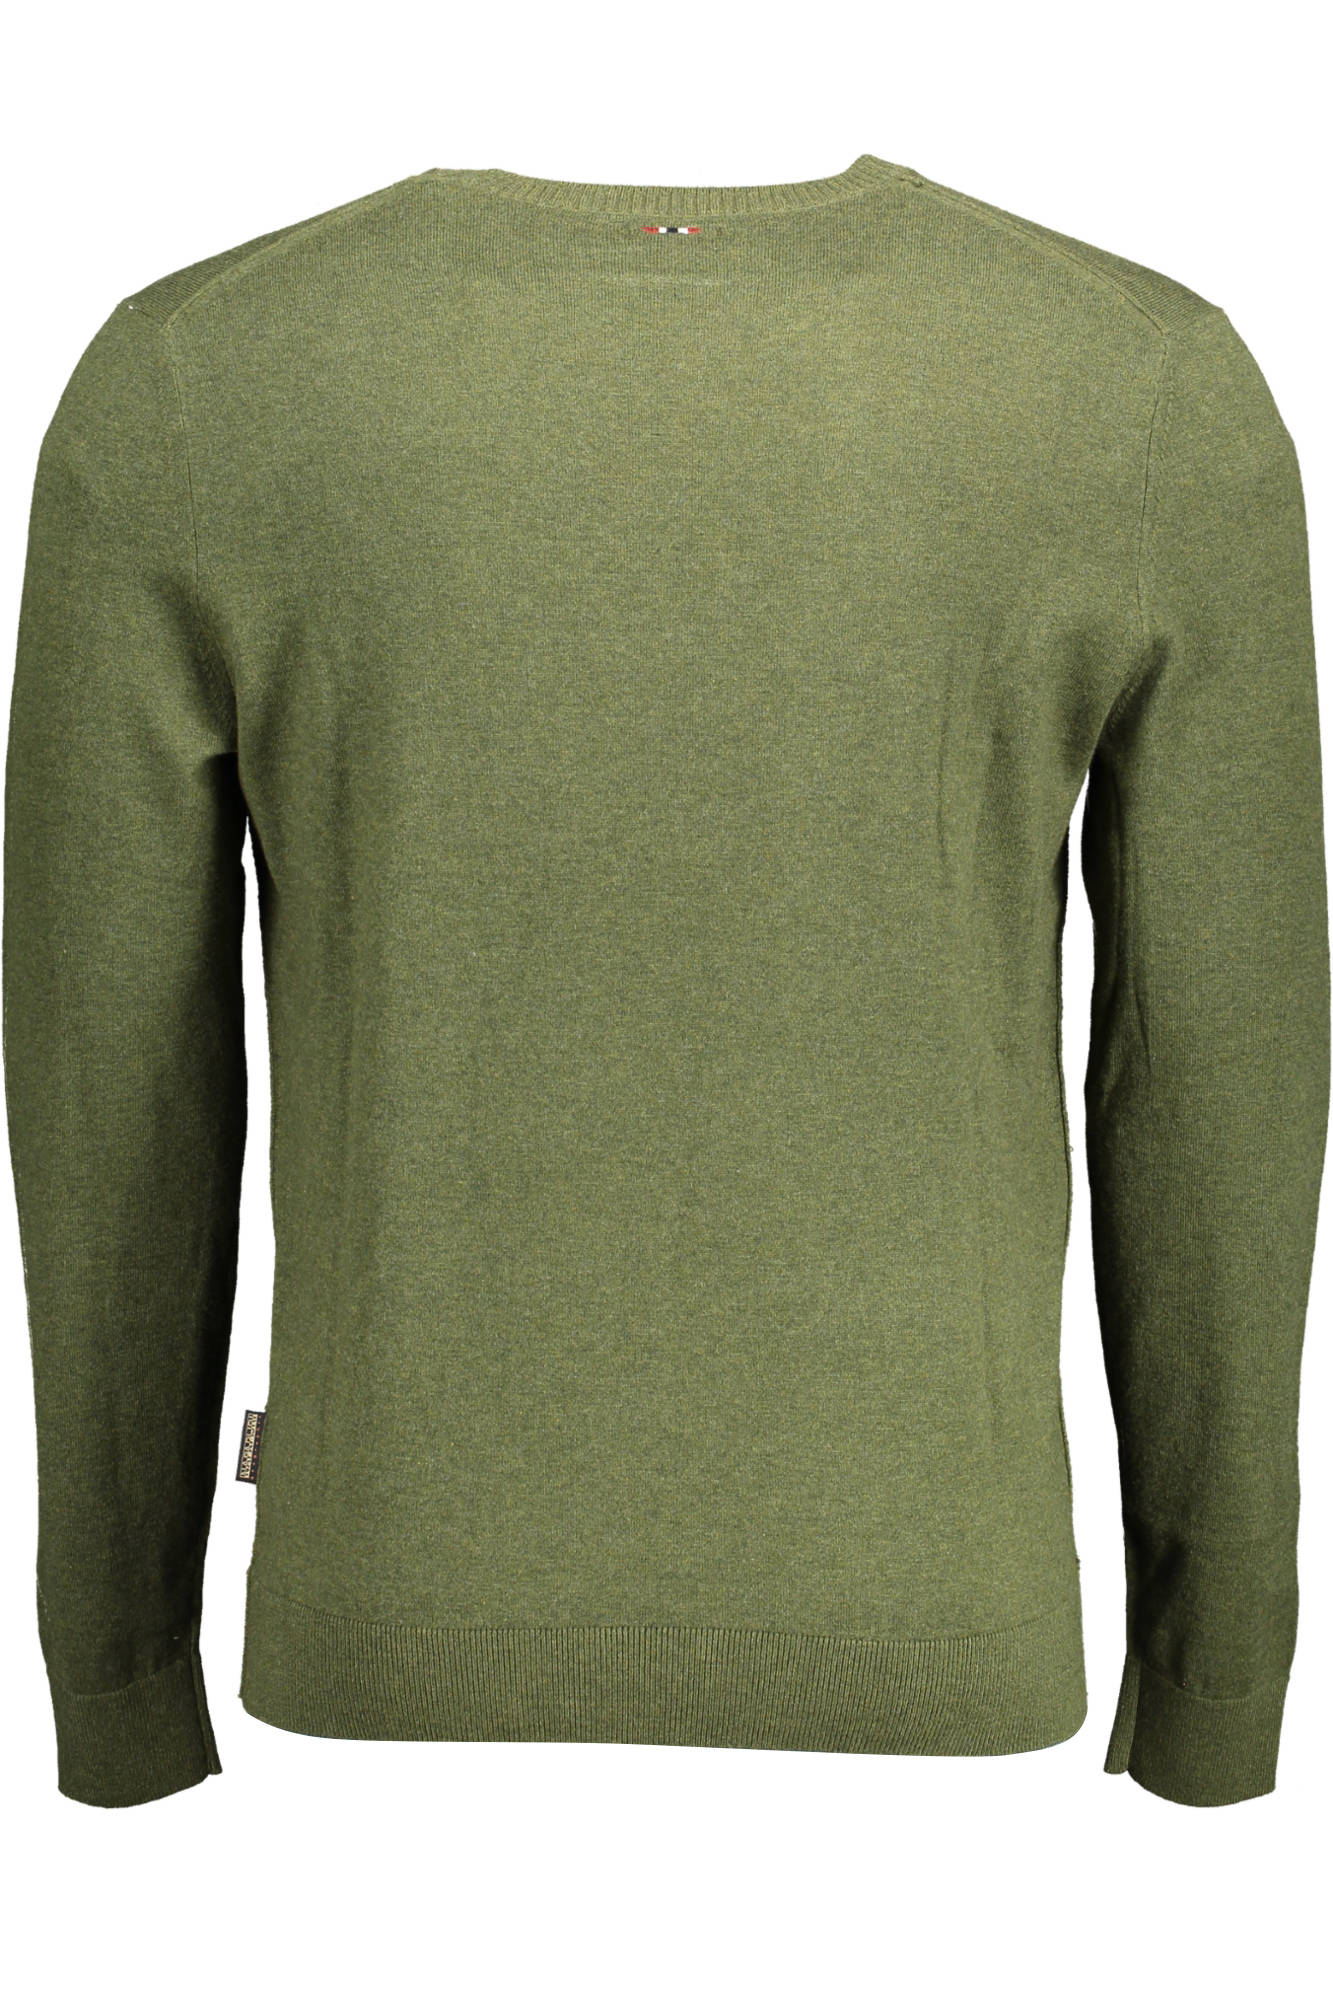 De lucht schetsen Shilling Napapijri Green Cotton Sweater • Fashion Brands Outlet